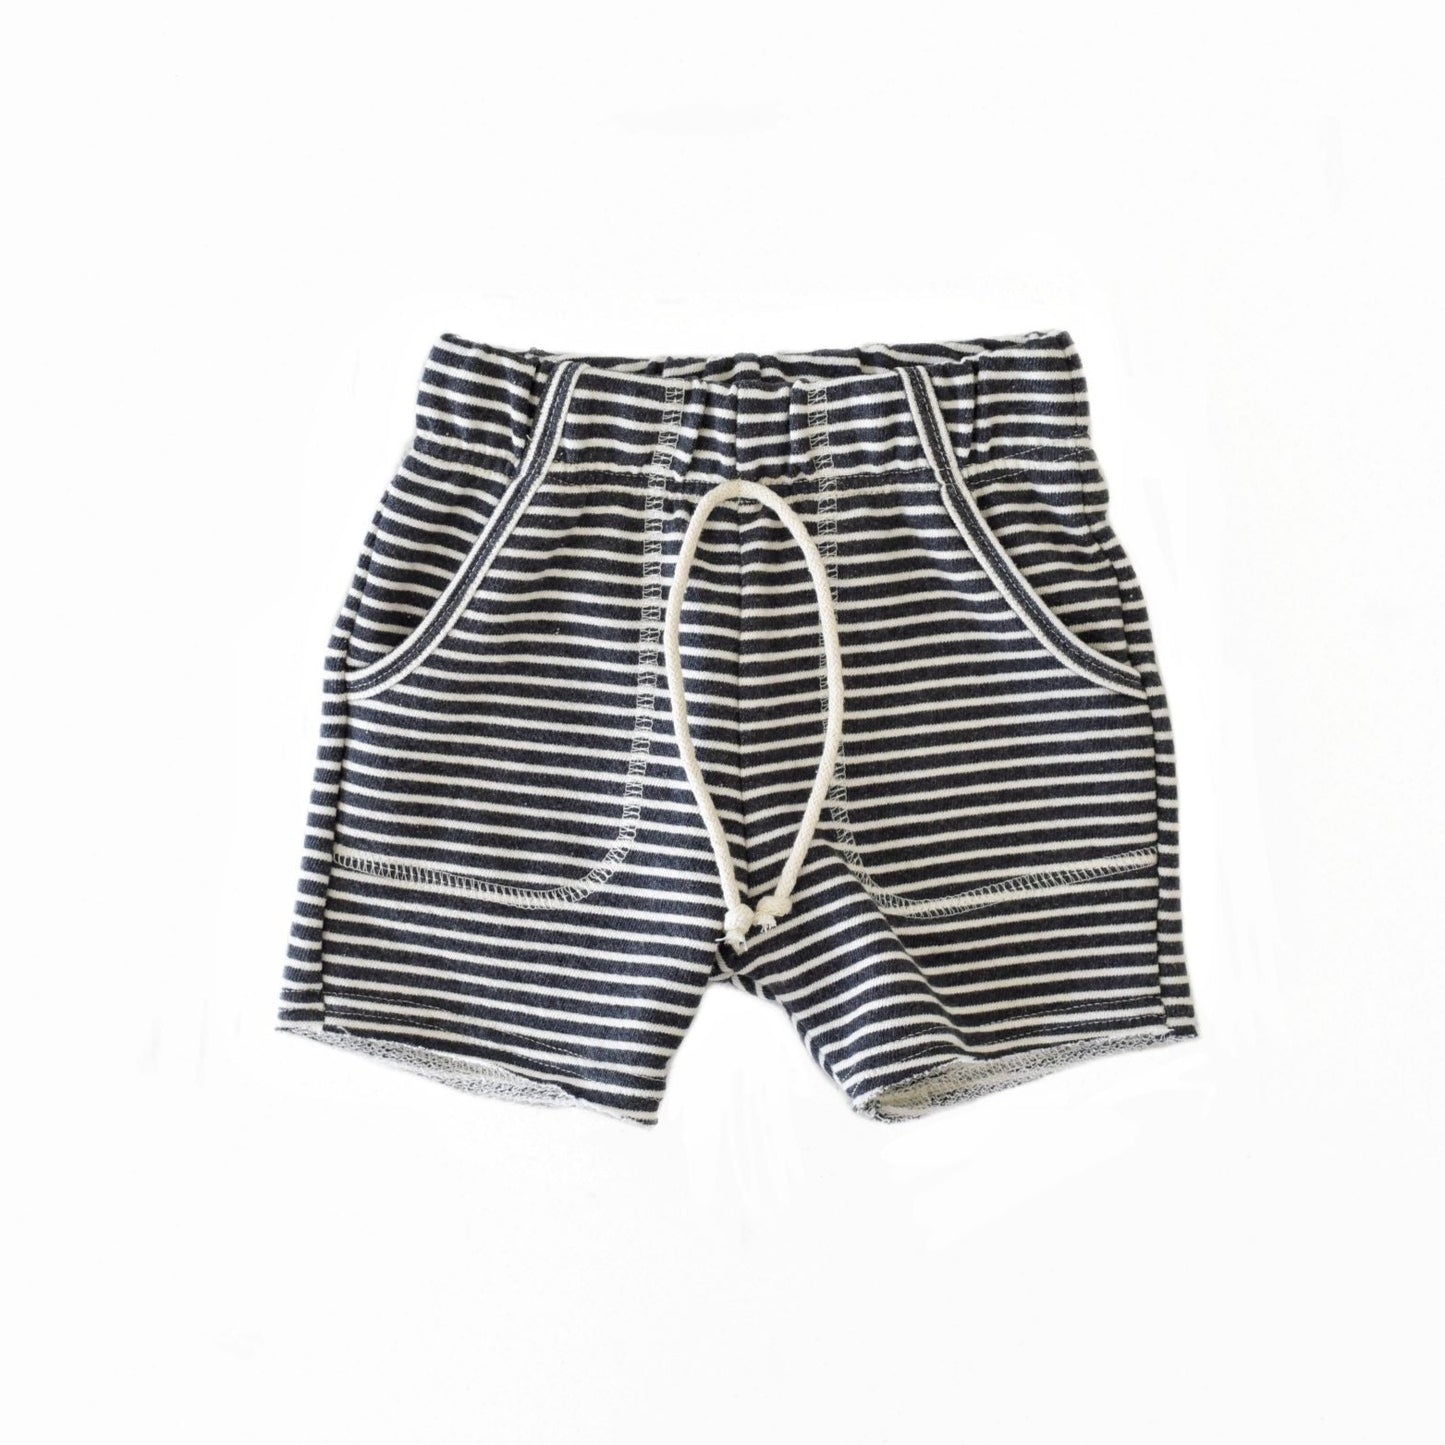 sk8 shorts - narrow stripe